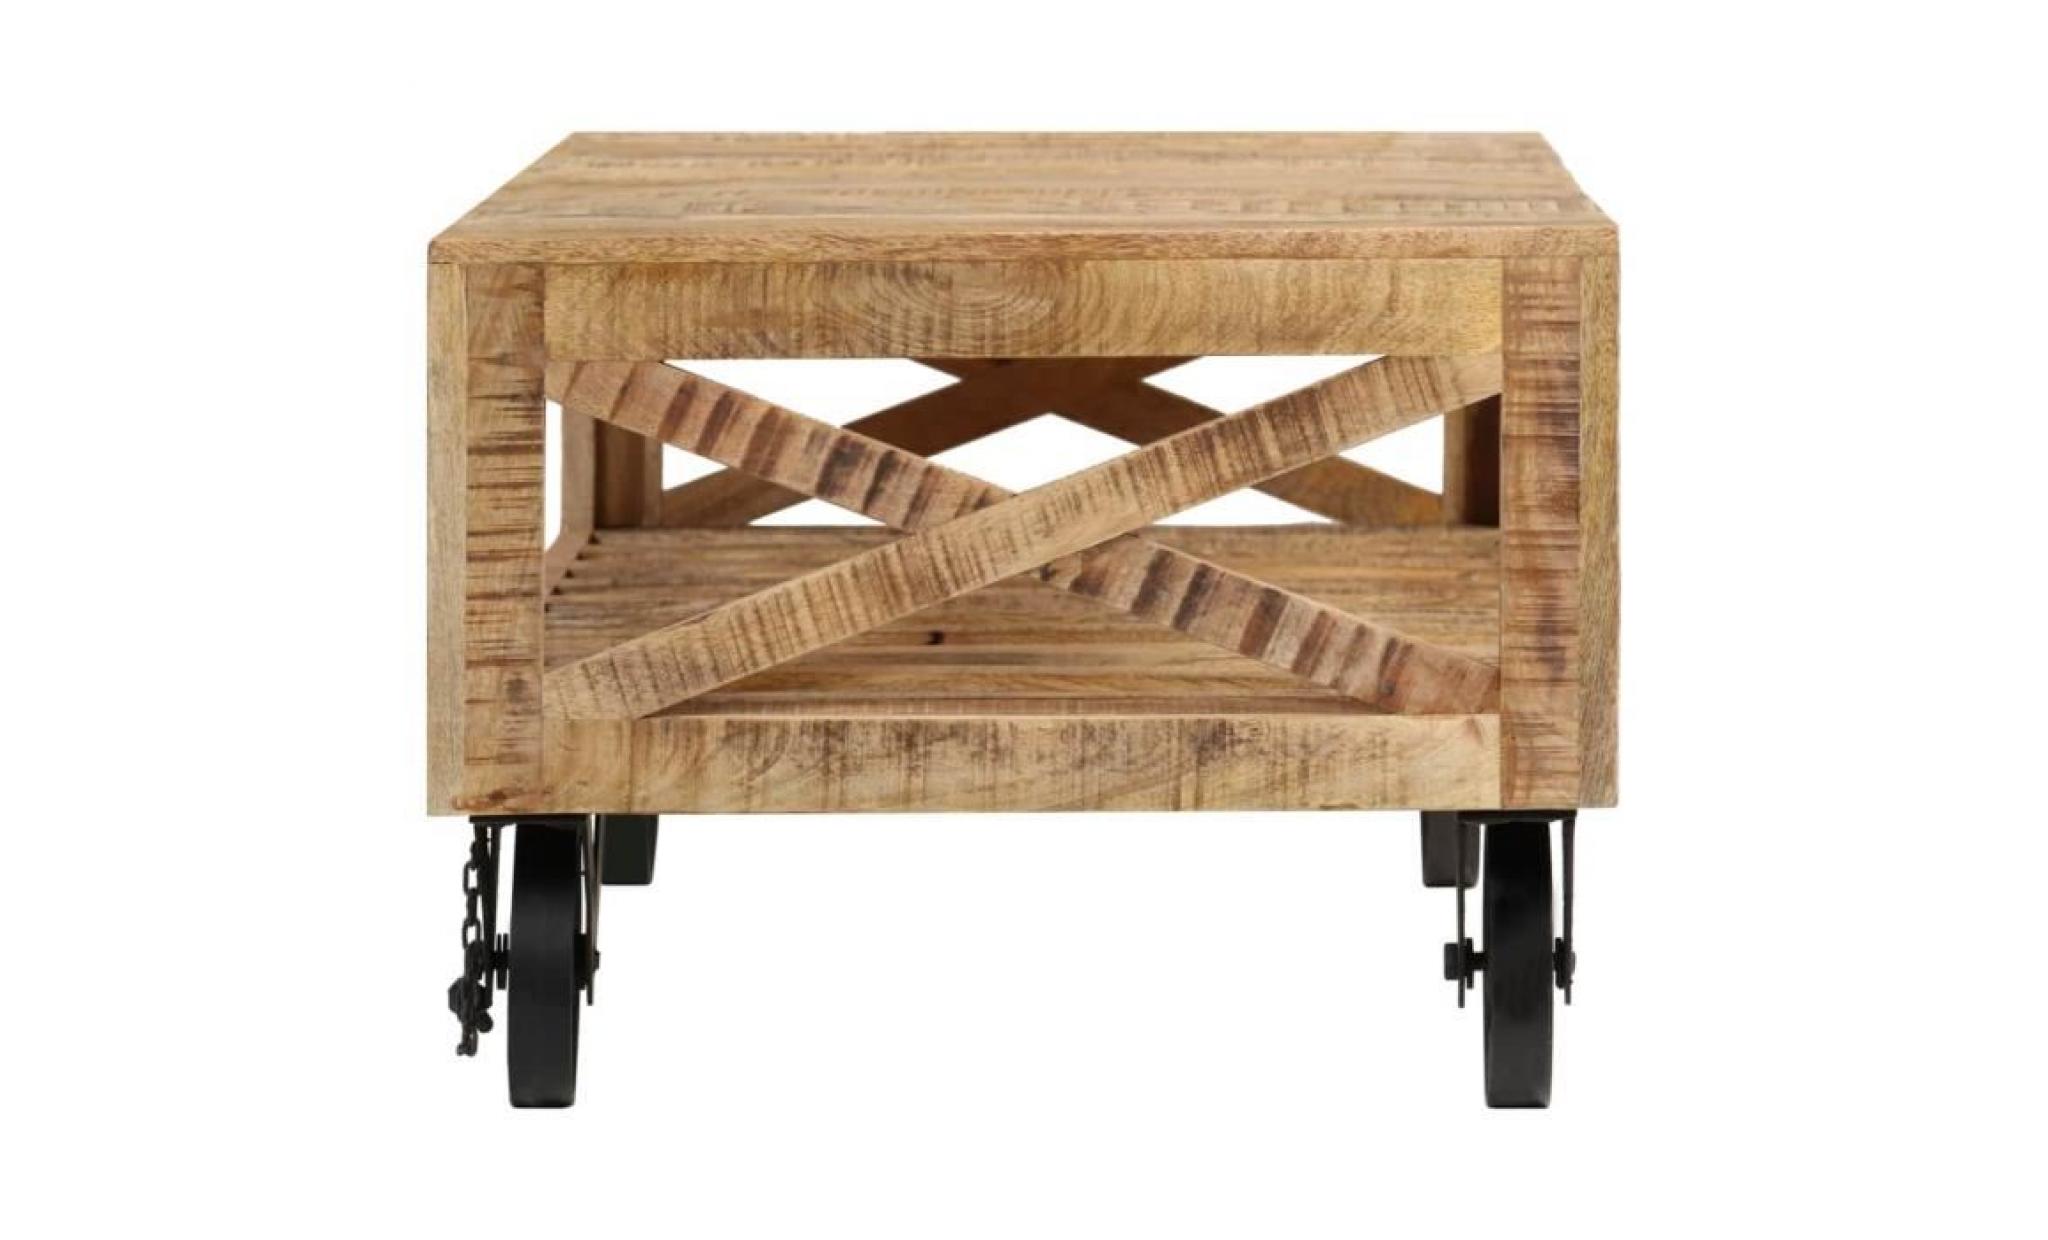 vidaxl table basse avec roues bois de manguier massif 110 x 50 x 37 cm pas cher